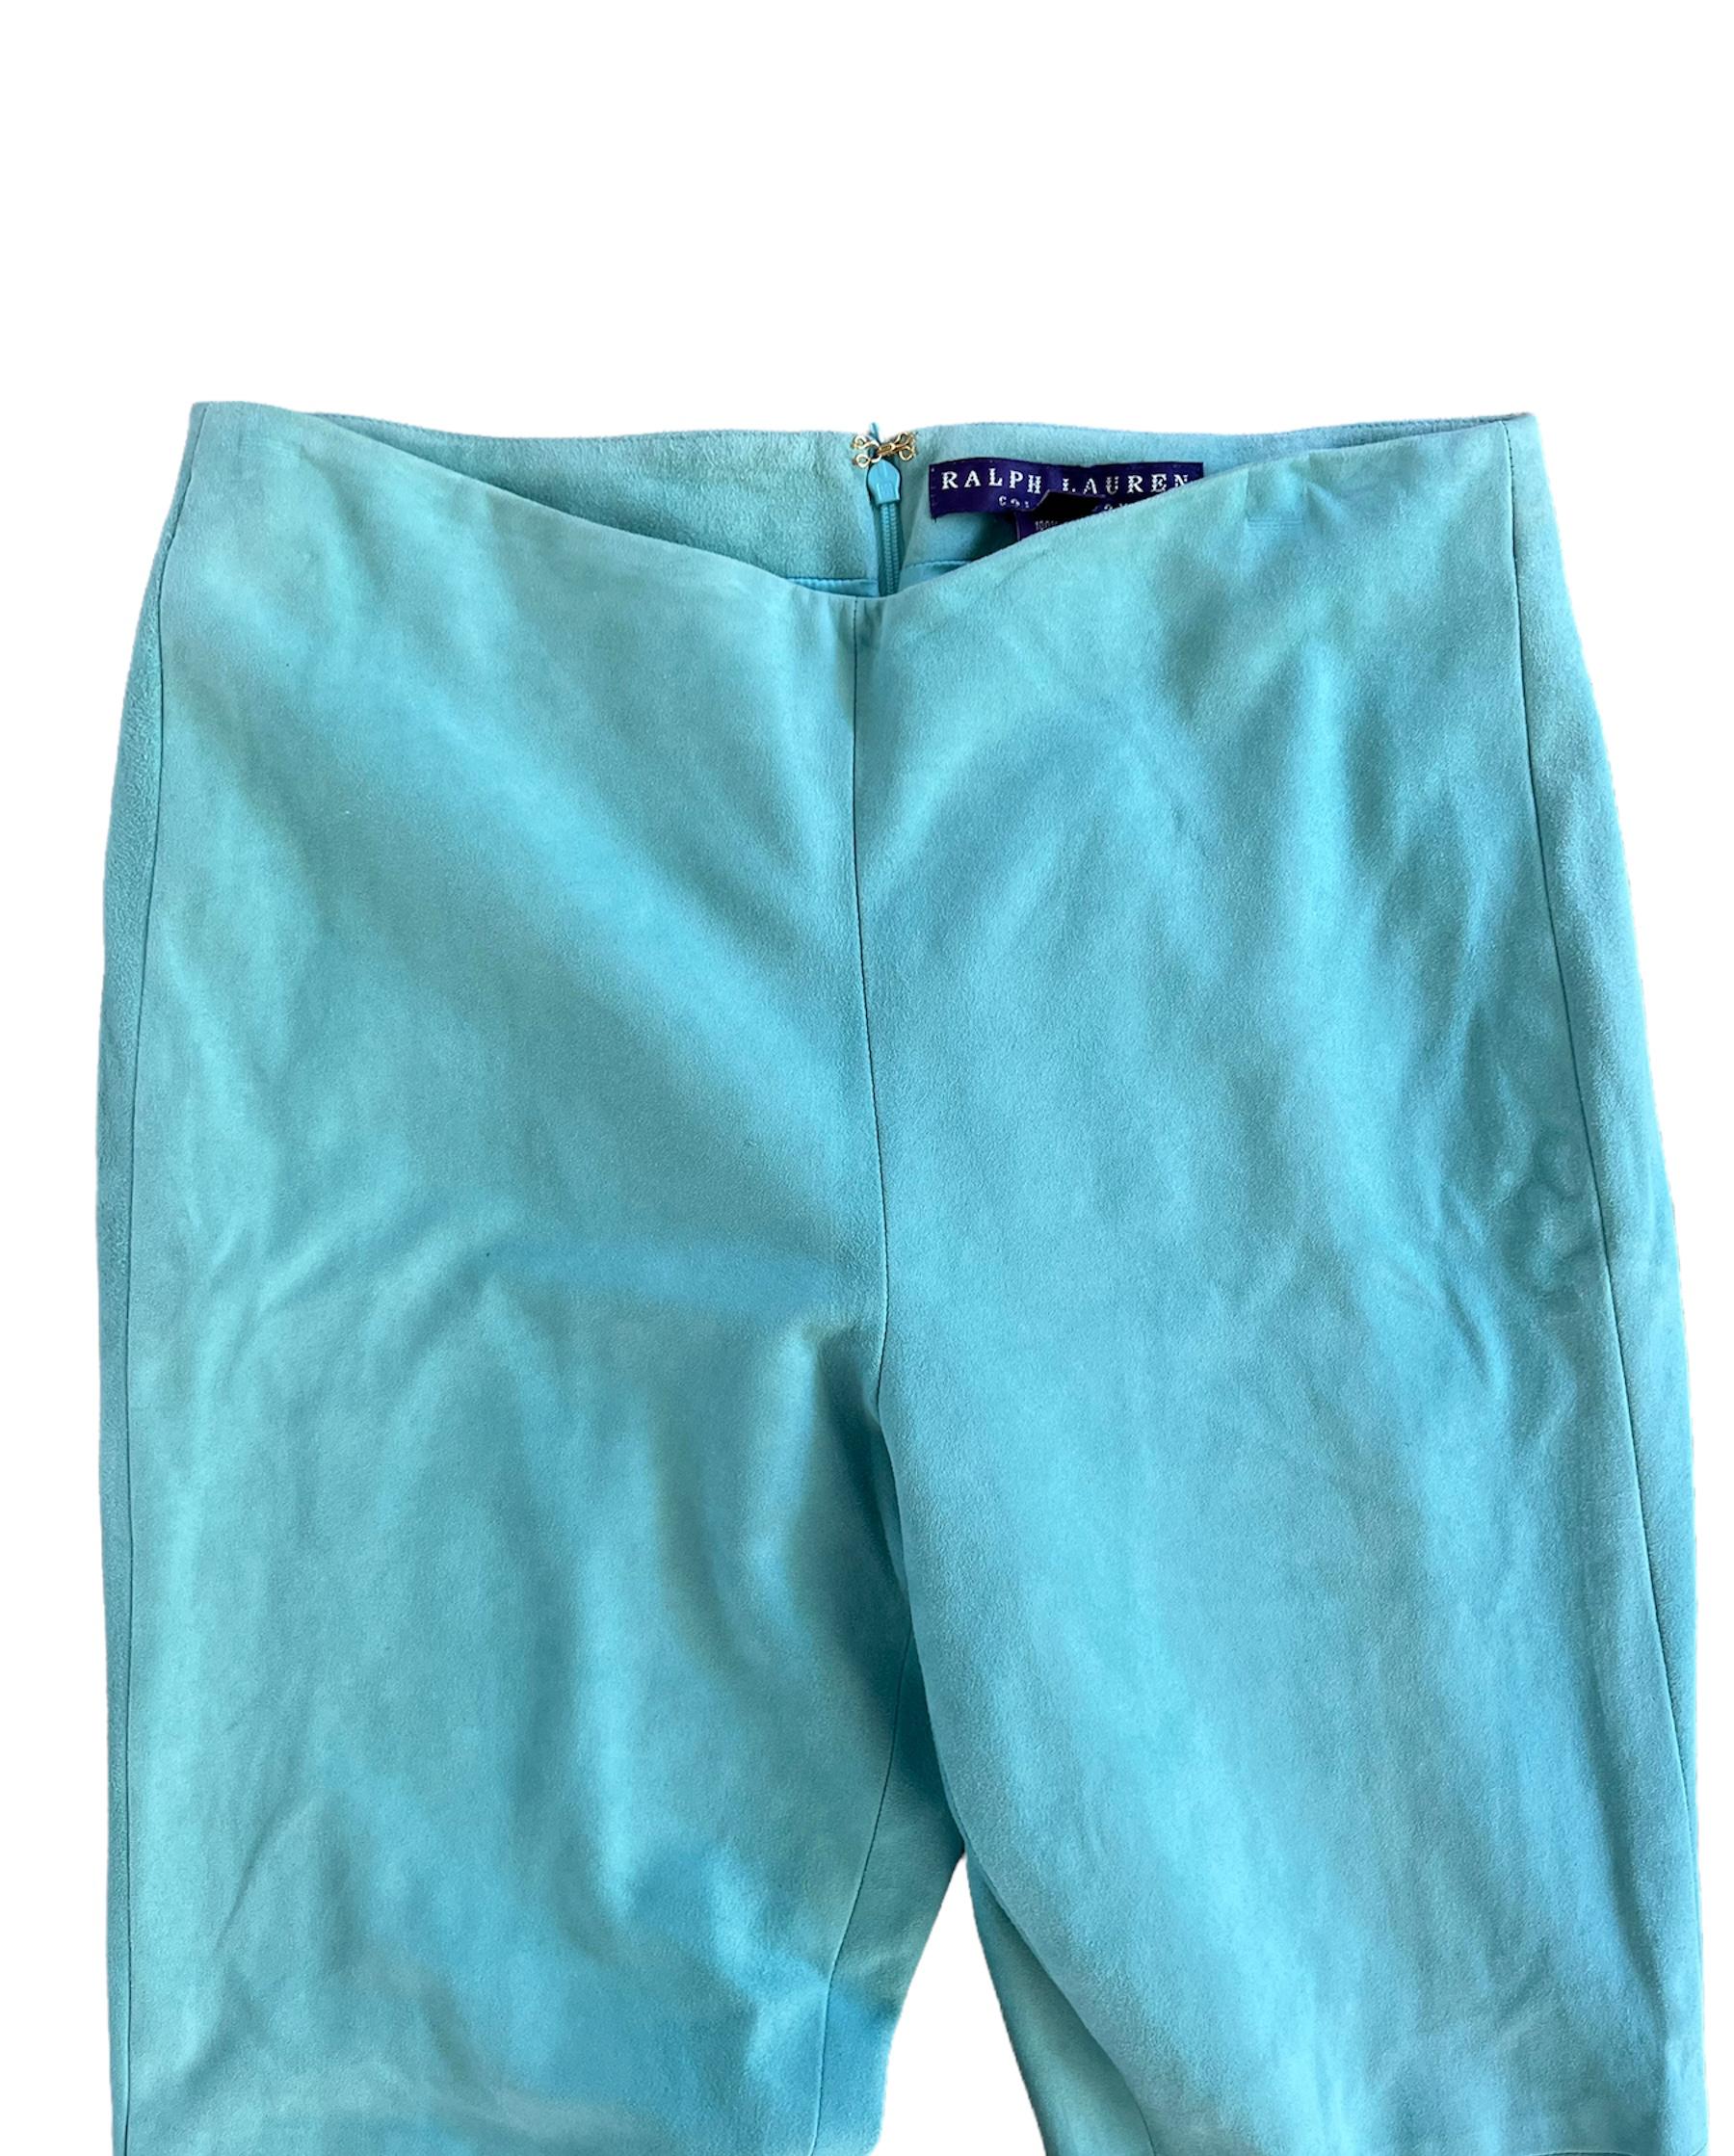 turquoise capri pants